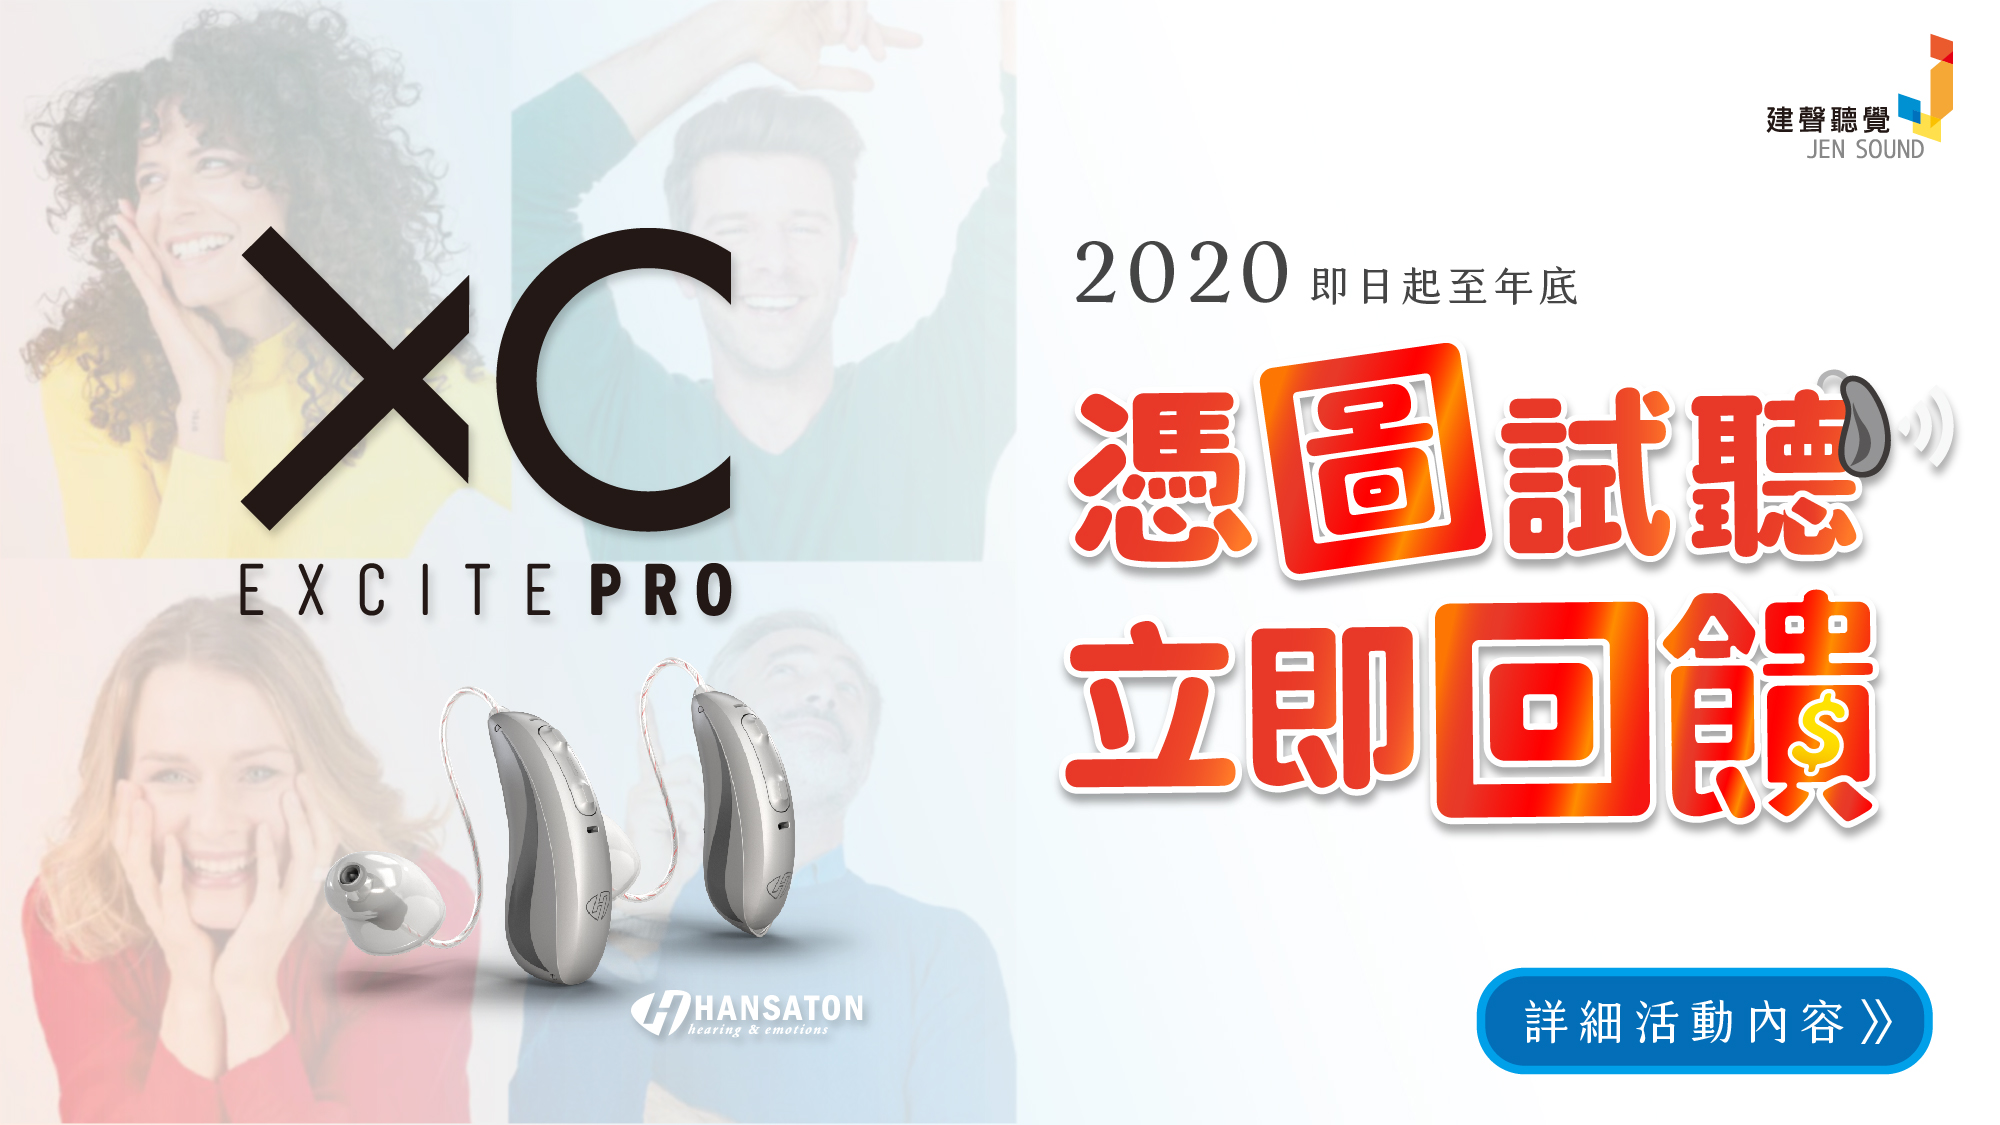 2020【憑圖試聽 立即回饋】建聲藍芽助聽器最新優惠－憑圖試聽，立即回饋1000！